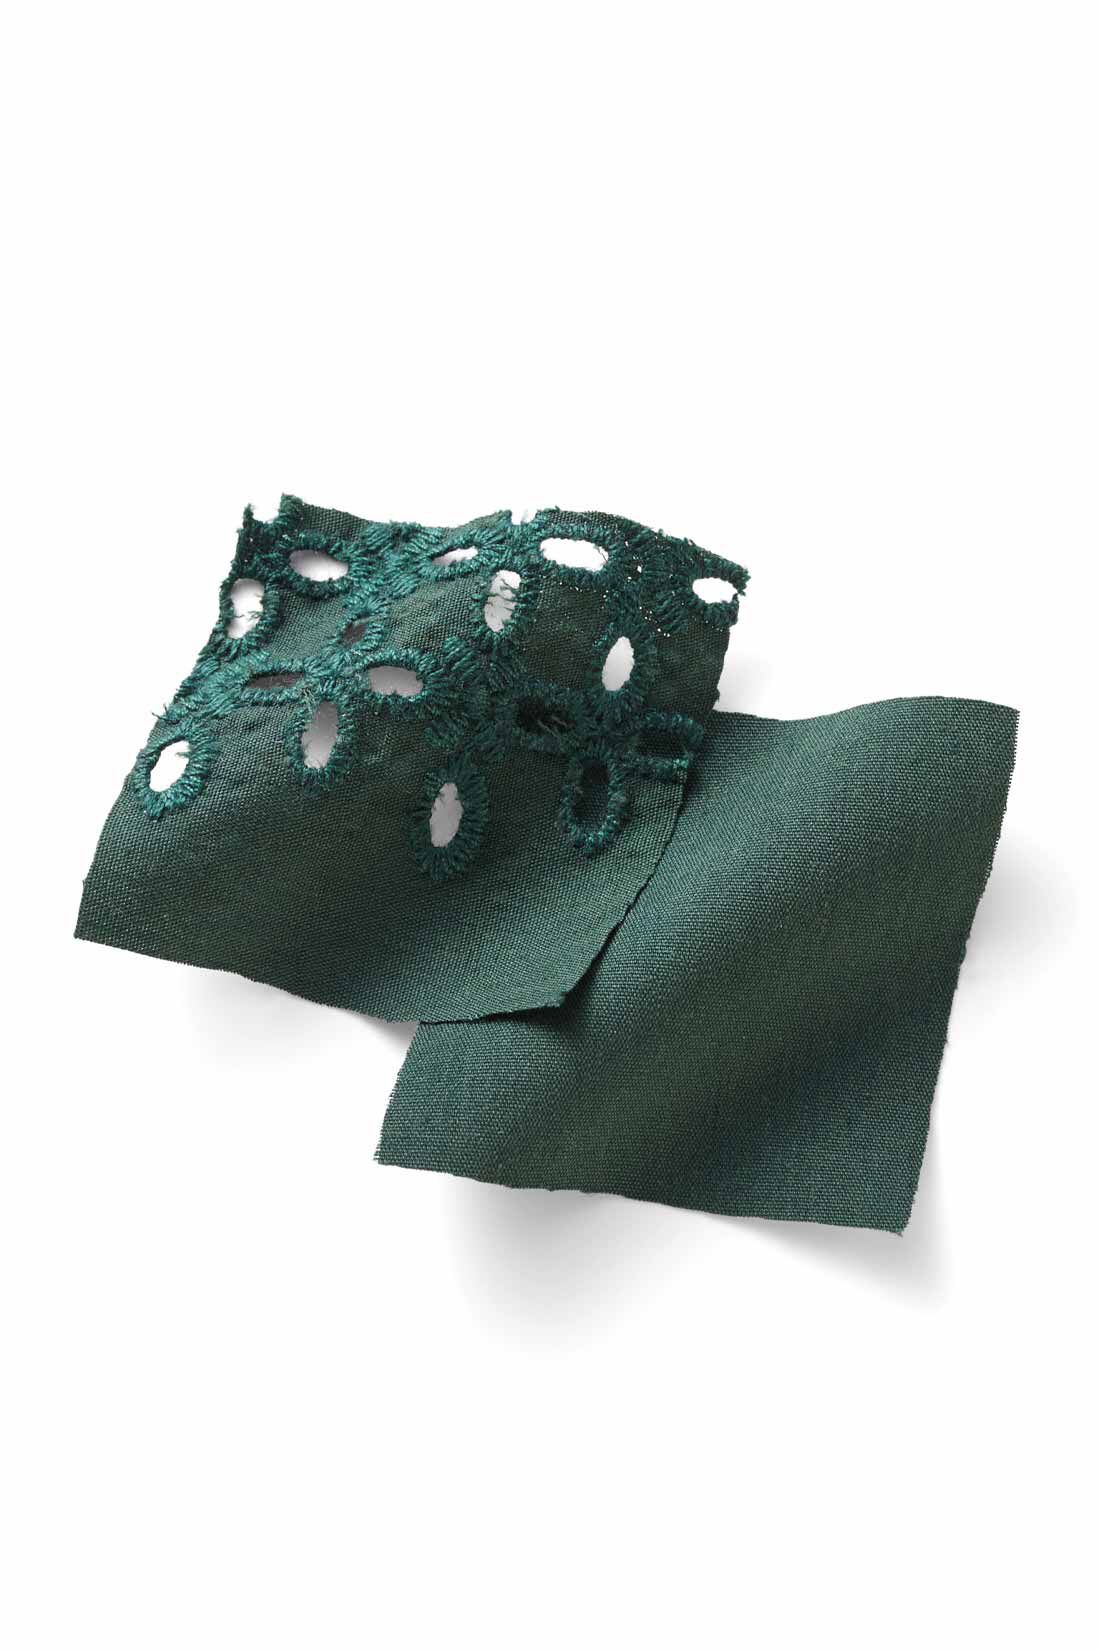 DRECO by IEDIT|【3～10日でお届け】IEDIT[イディット]　アンティーク風デザインの袖レースブラウス〈ブラック〉|張り感のある布はく素材とレトロな表情のエンブロイダリーレースはしわが気になりにくいナチュラルな素材感。　※お届けするカラーとは異なります。